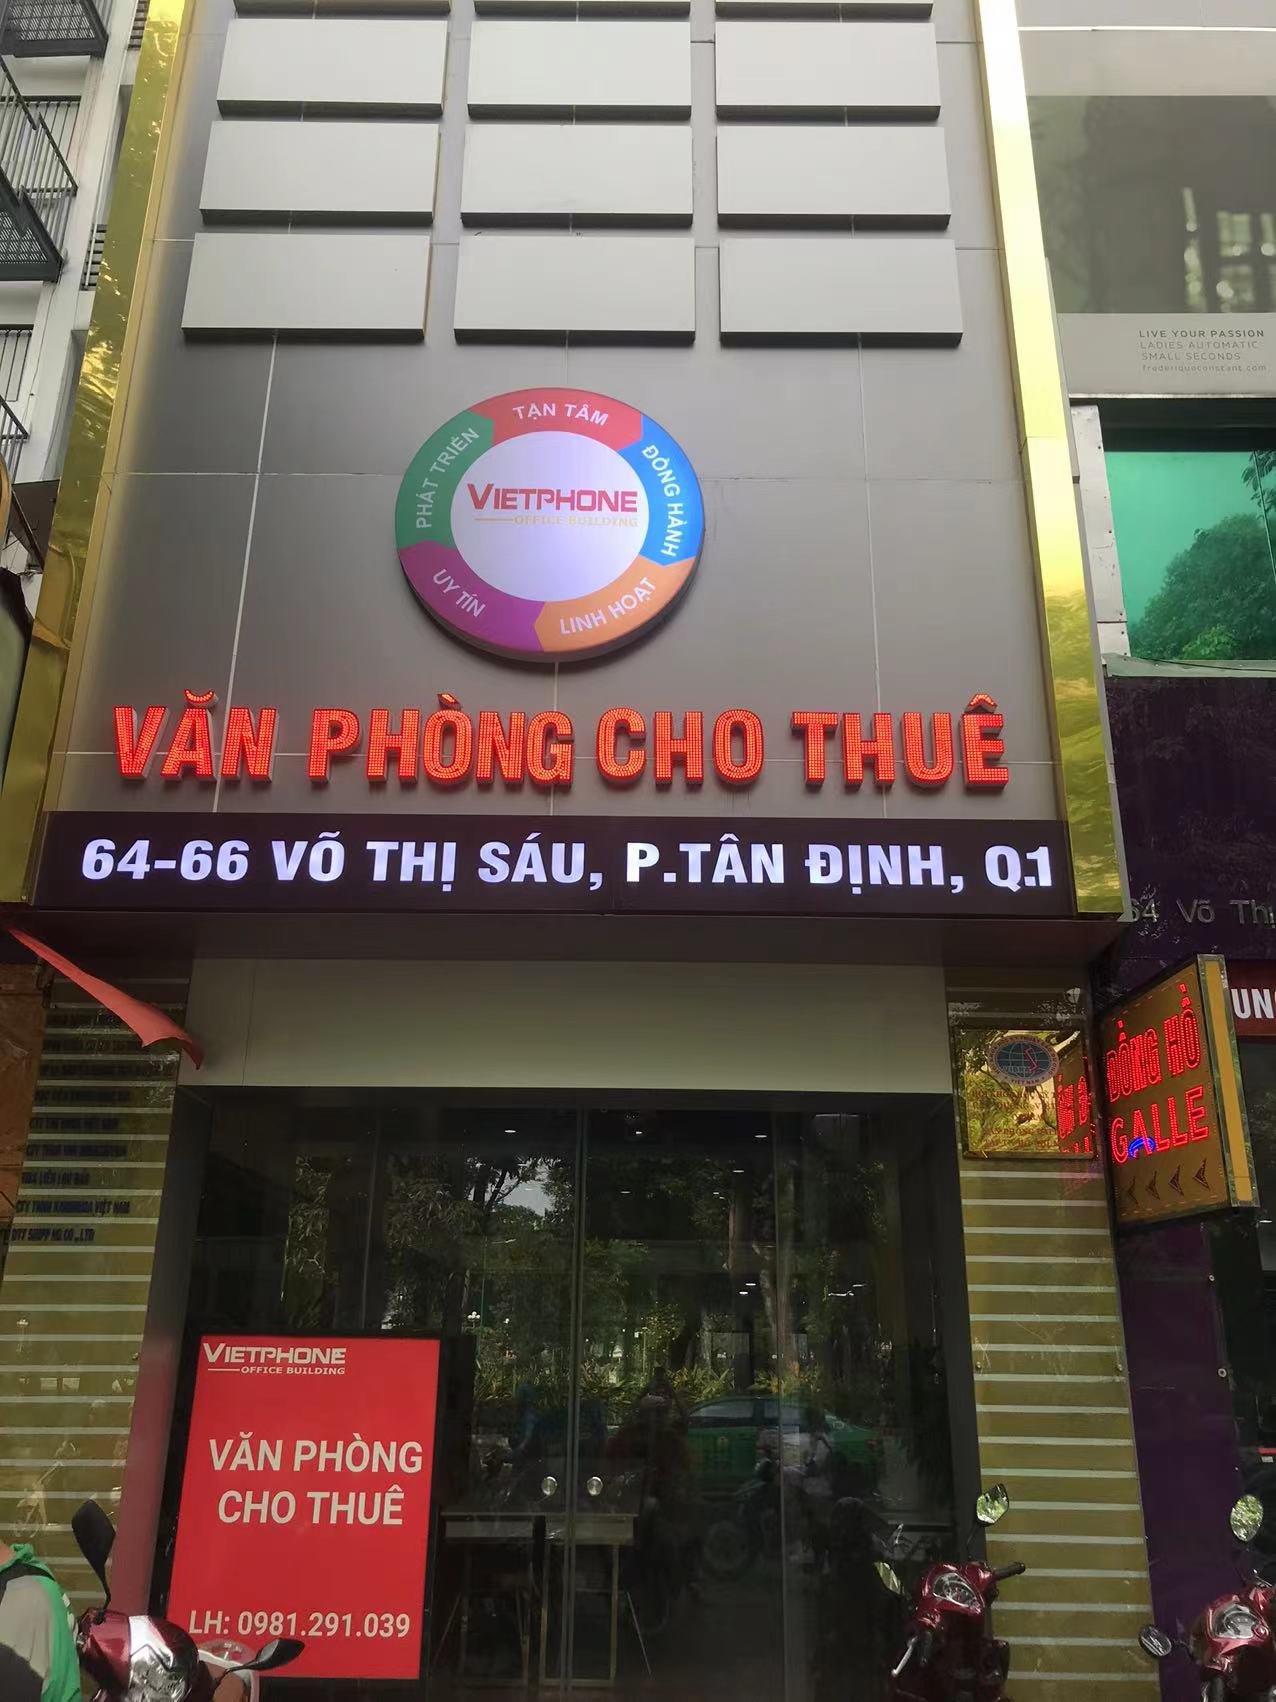 Ho Chi Minh Office, Vietnam